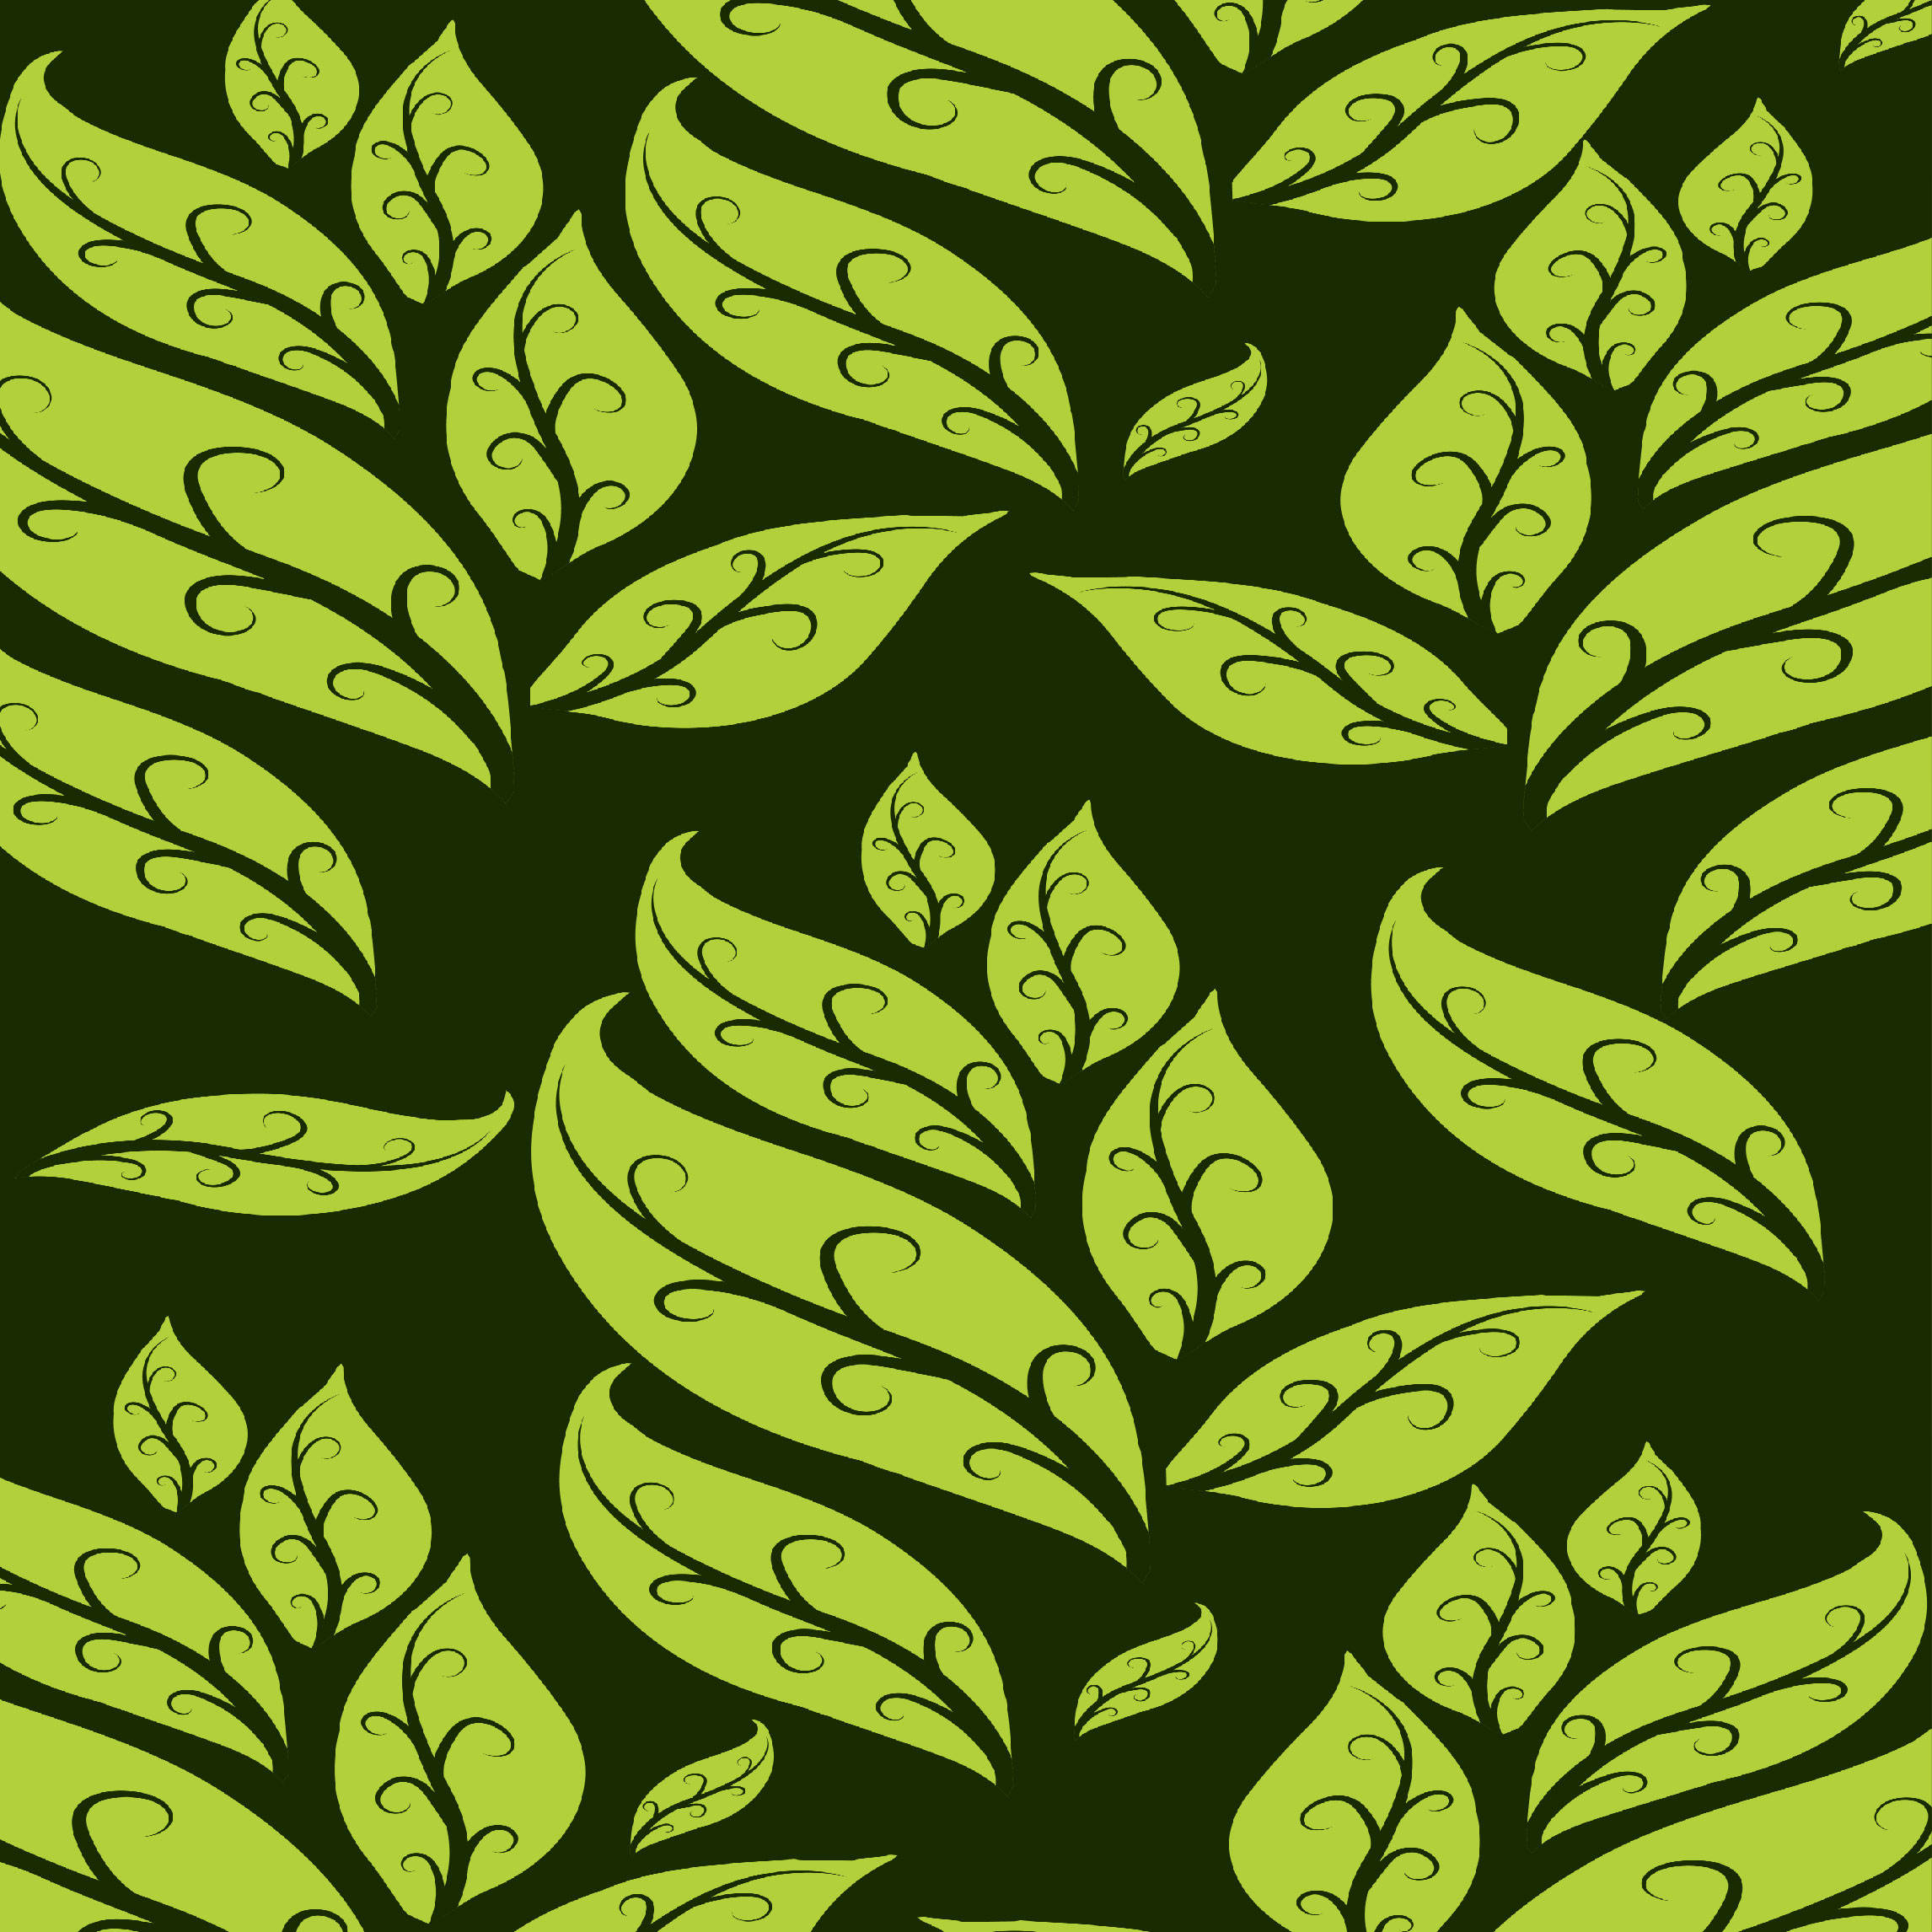 Nature Green Leaves Design Patterns facebook image.